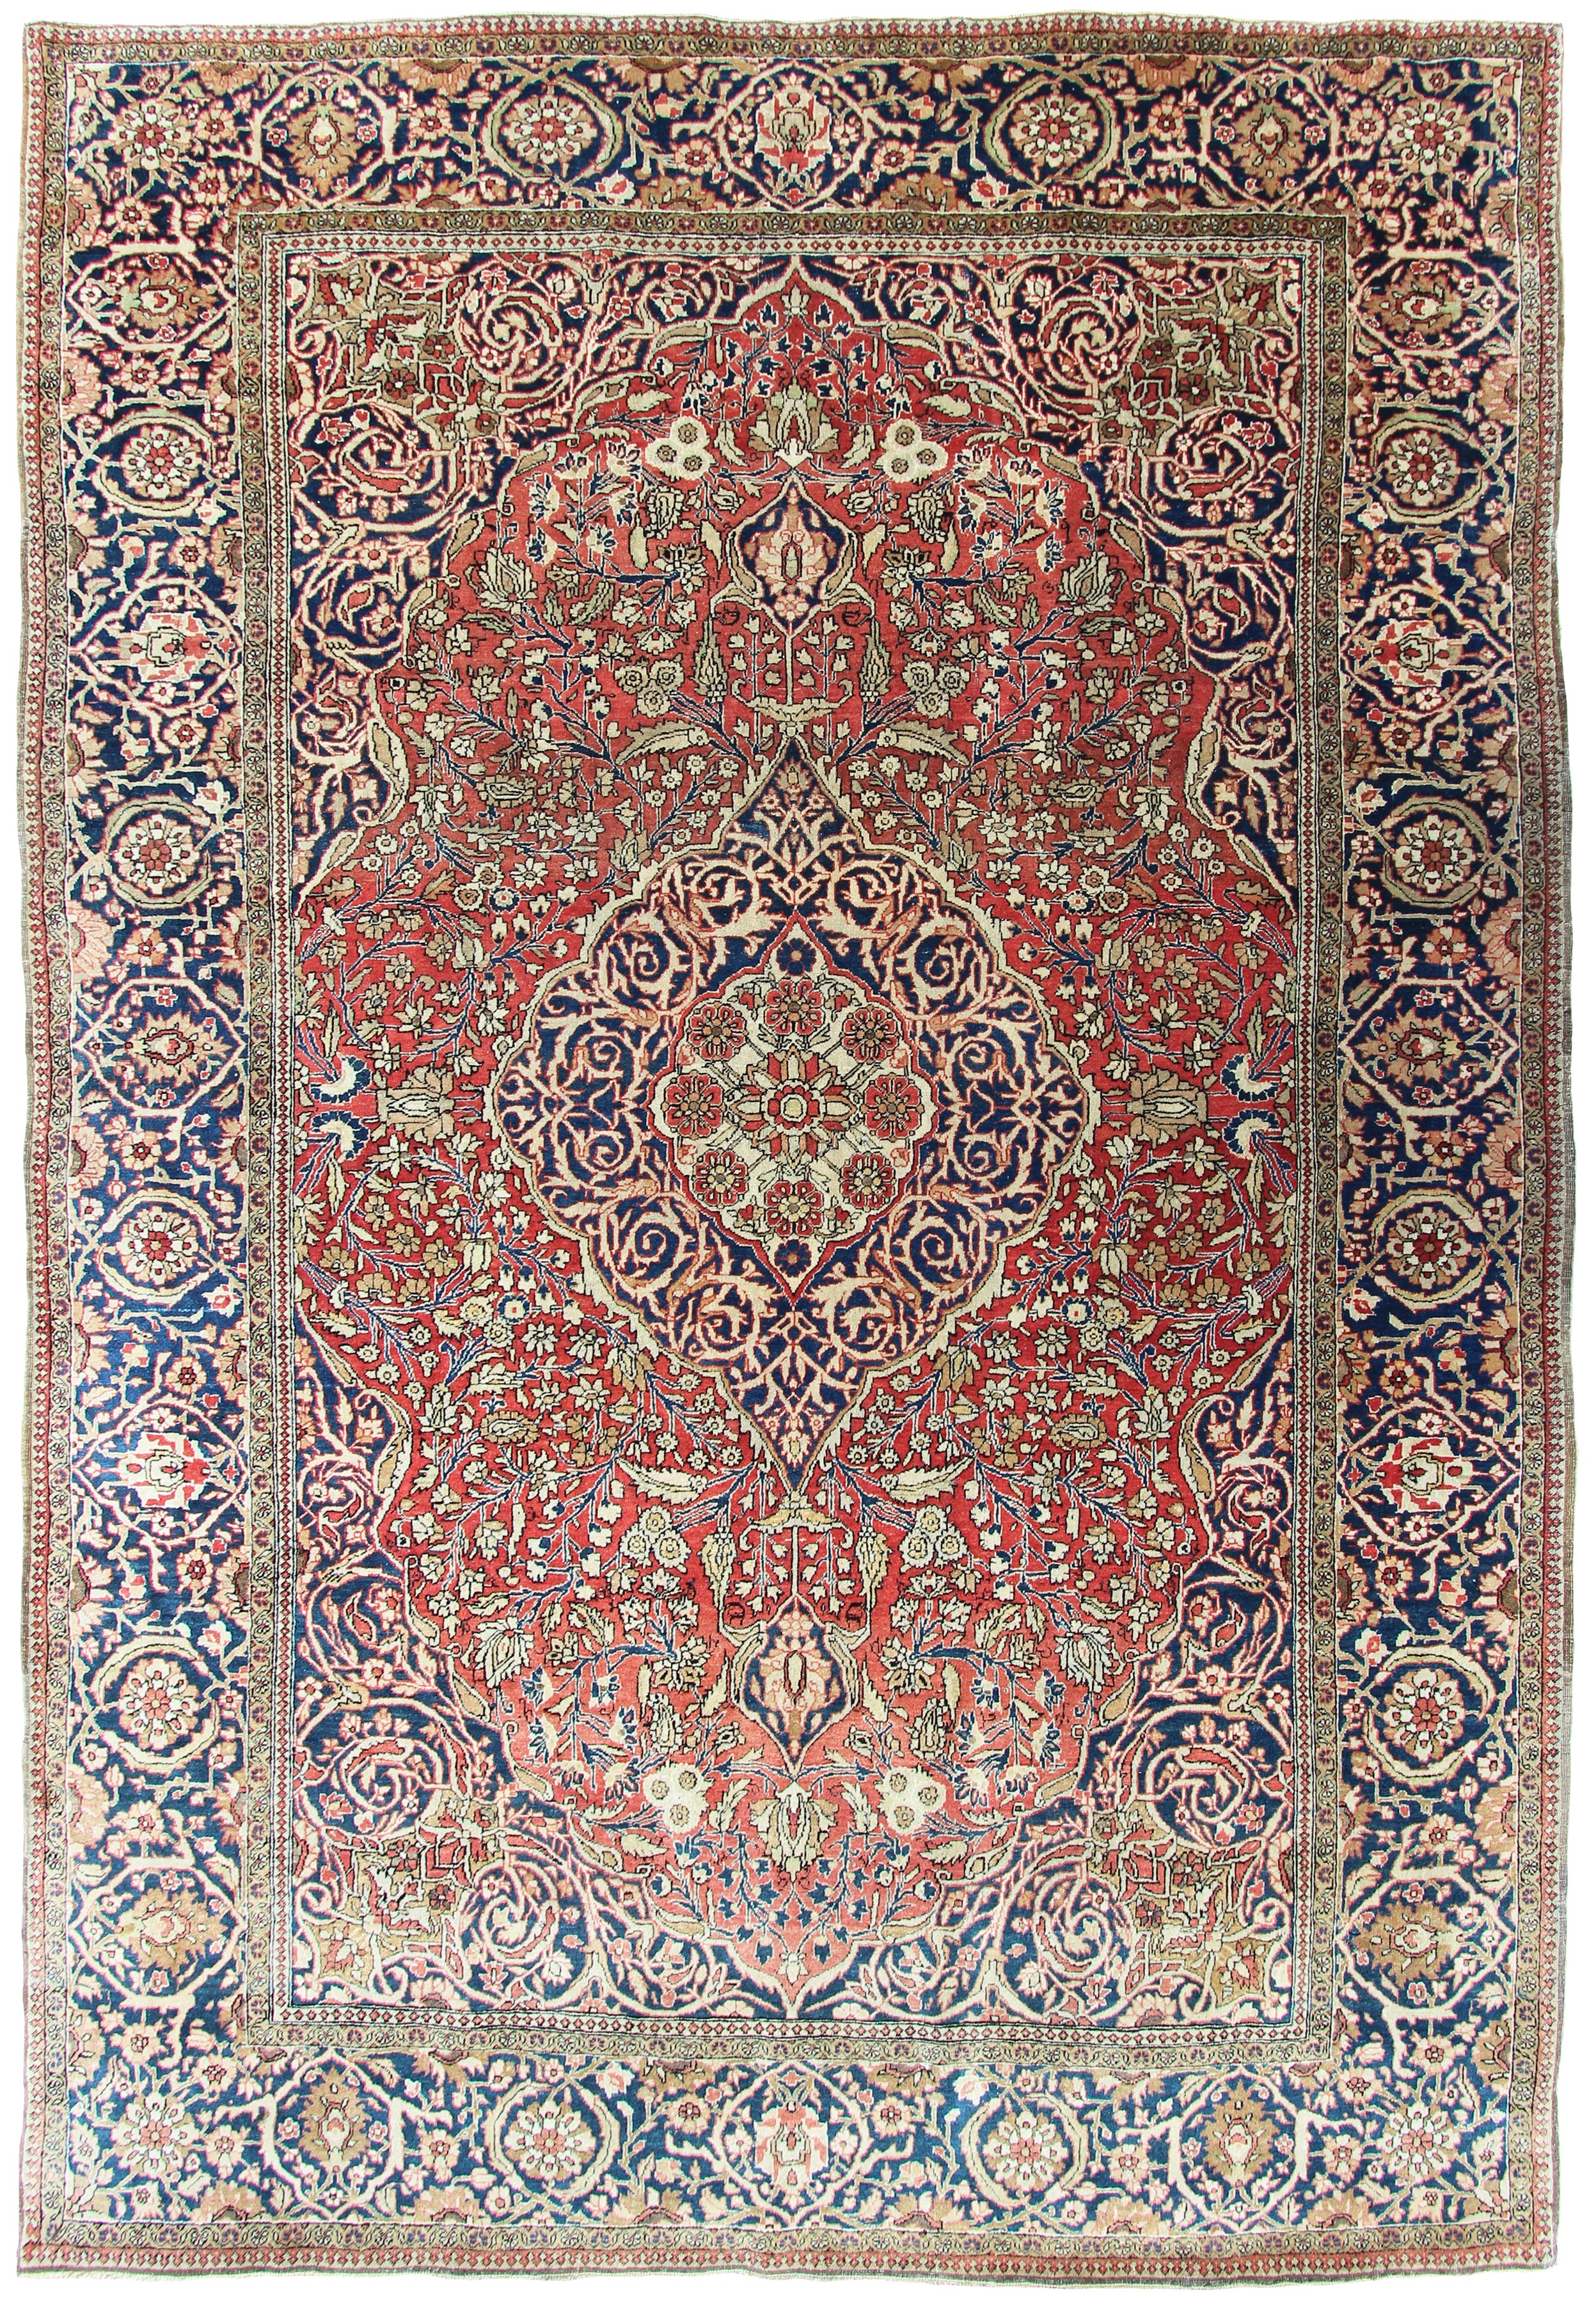 Antique Mohtasham Kashan rug - Farnham Antique Carpets